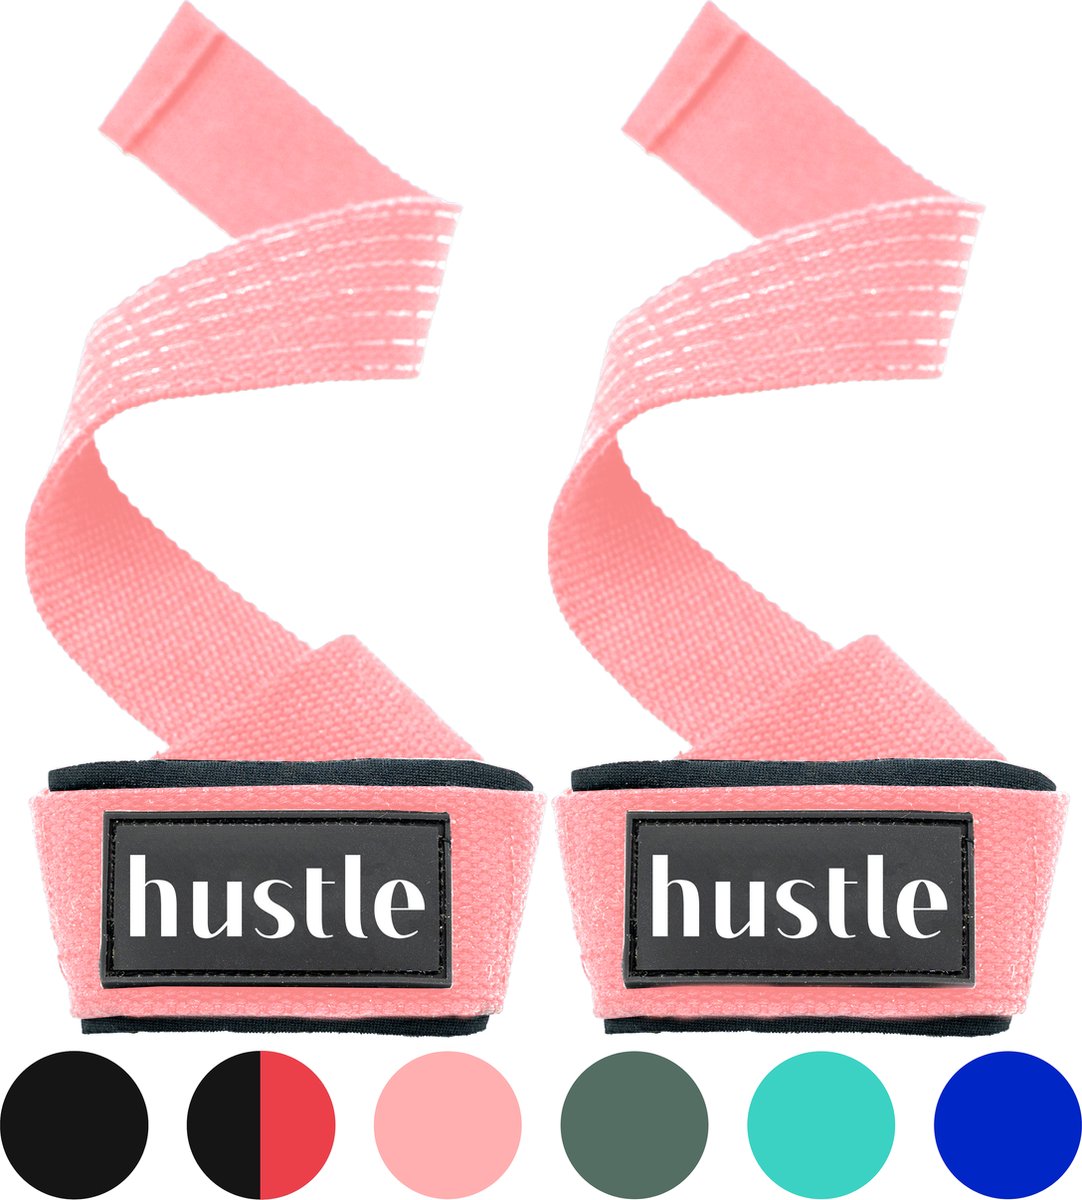 hustle - Roze Anti-Slip Lifting Straps - met Padding en Anti-slip - Padded - Lifting Grips/Hooks - Deadlift Straps - Voor Fitness